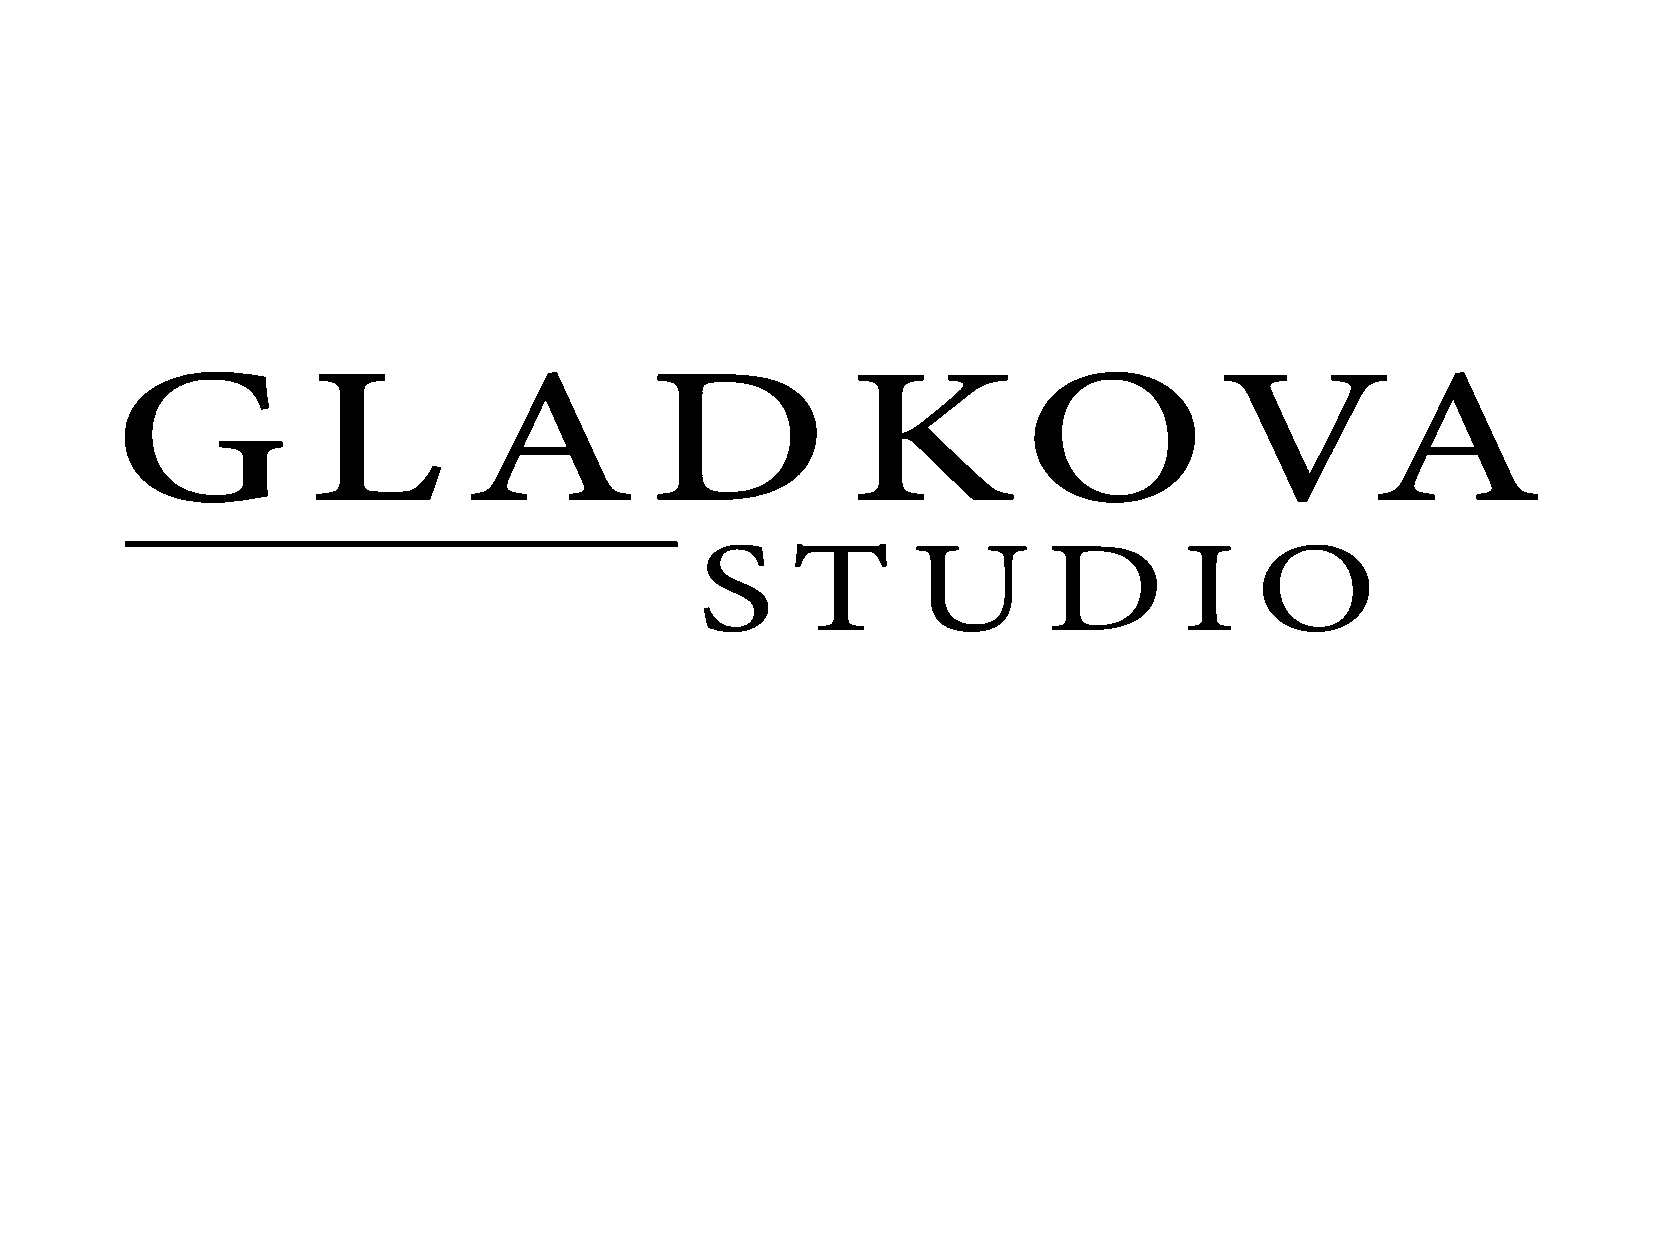 GladkovaStudio